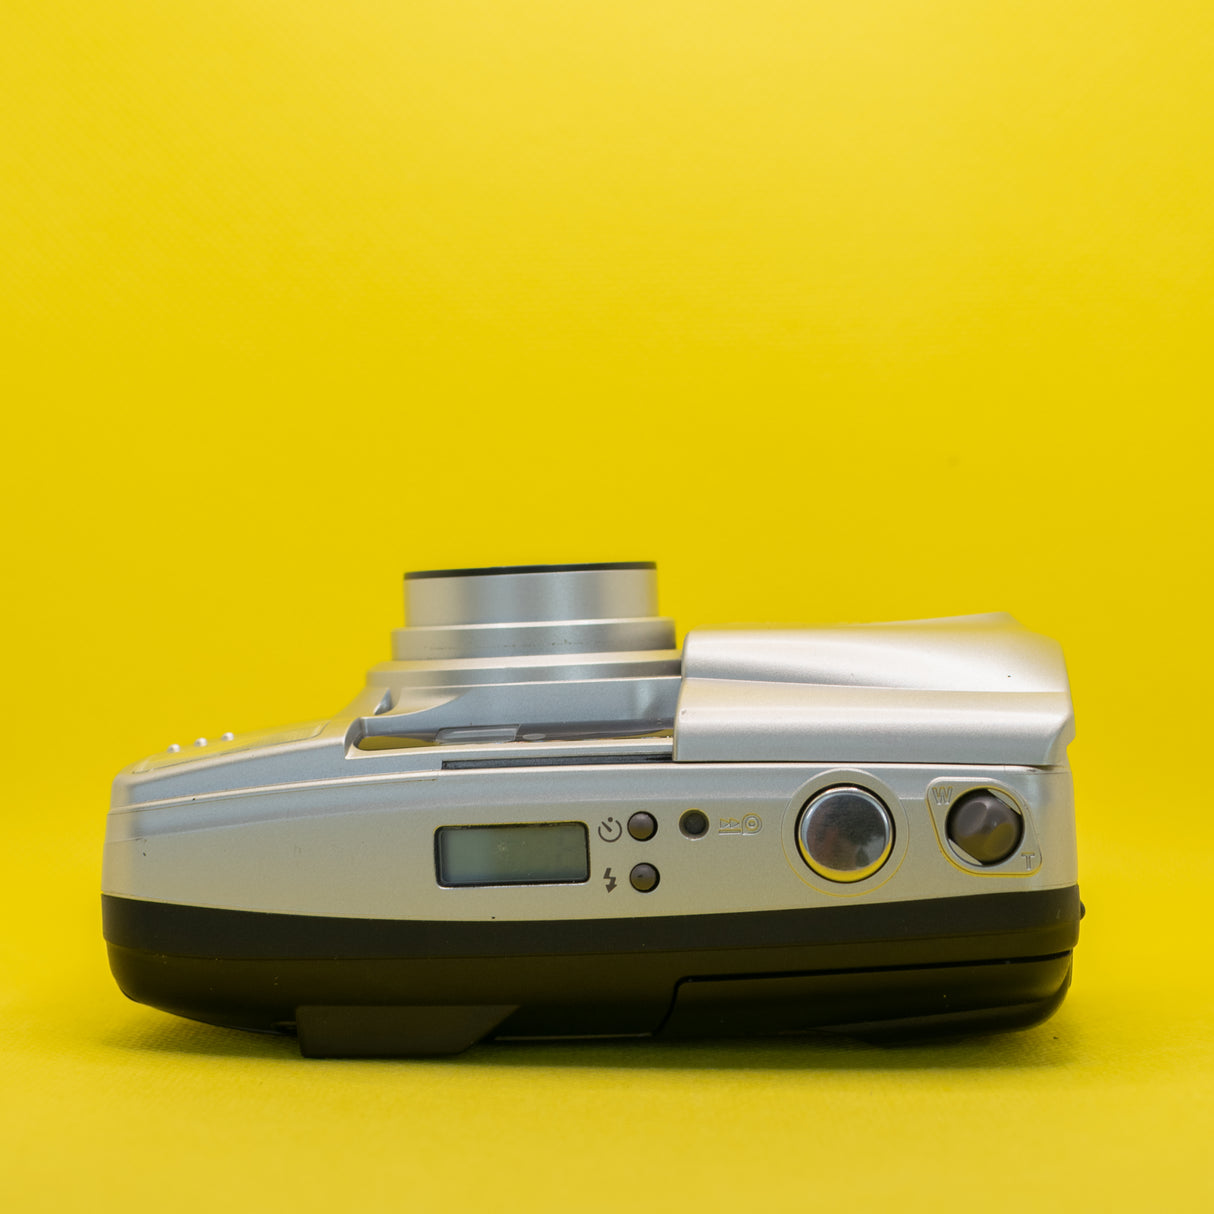 Olympus Superzoom 70G - Fotocamera vintage con pellicola premium da 35 mm